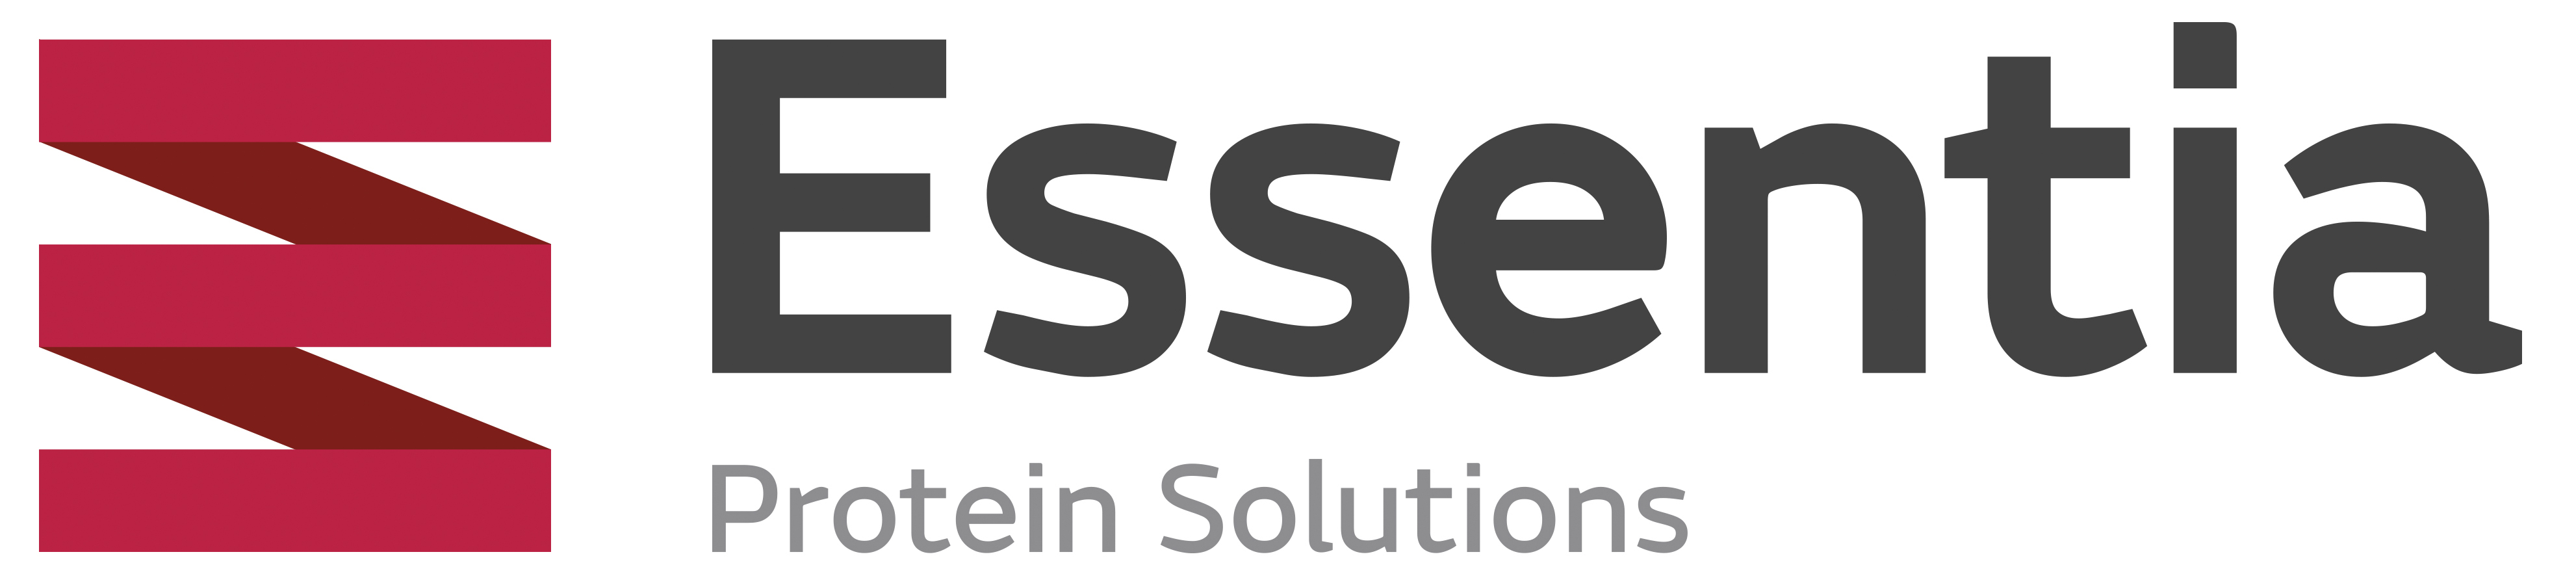 Essentia Protein Solutions